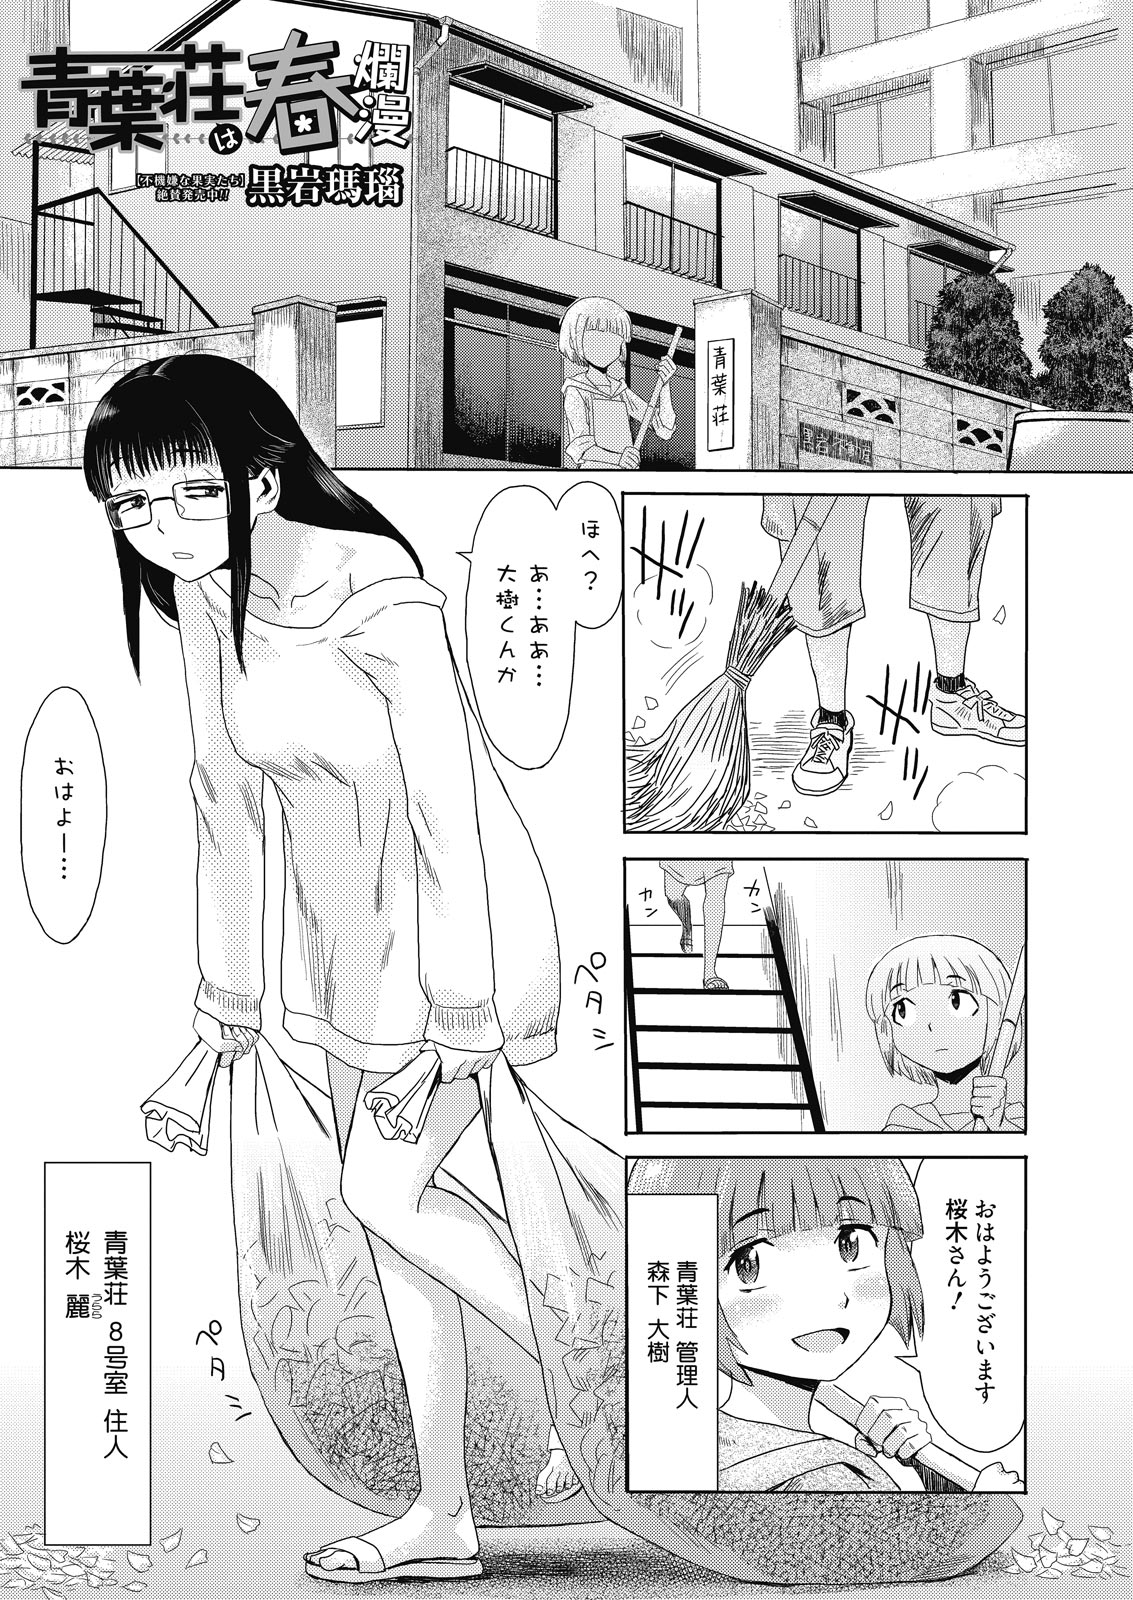 web 漫画ばんがいち Vol.8